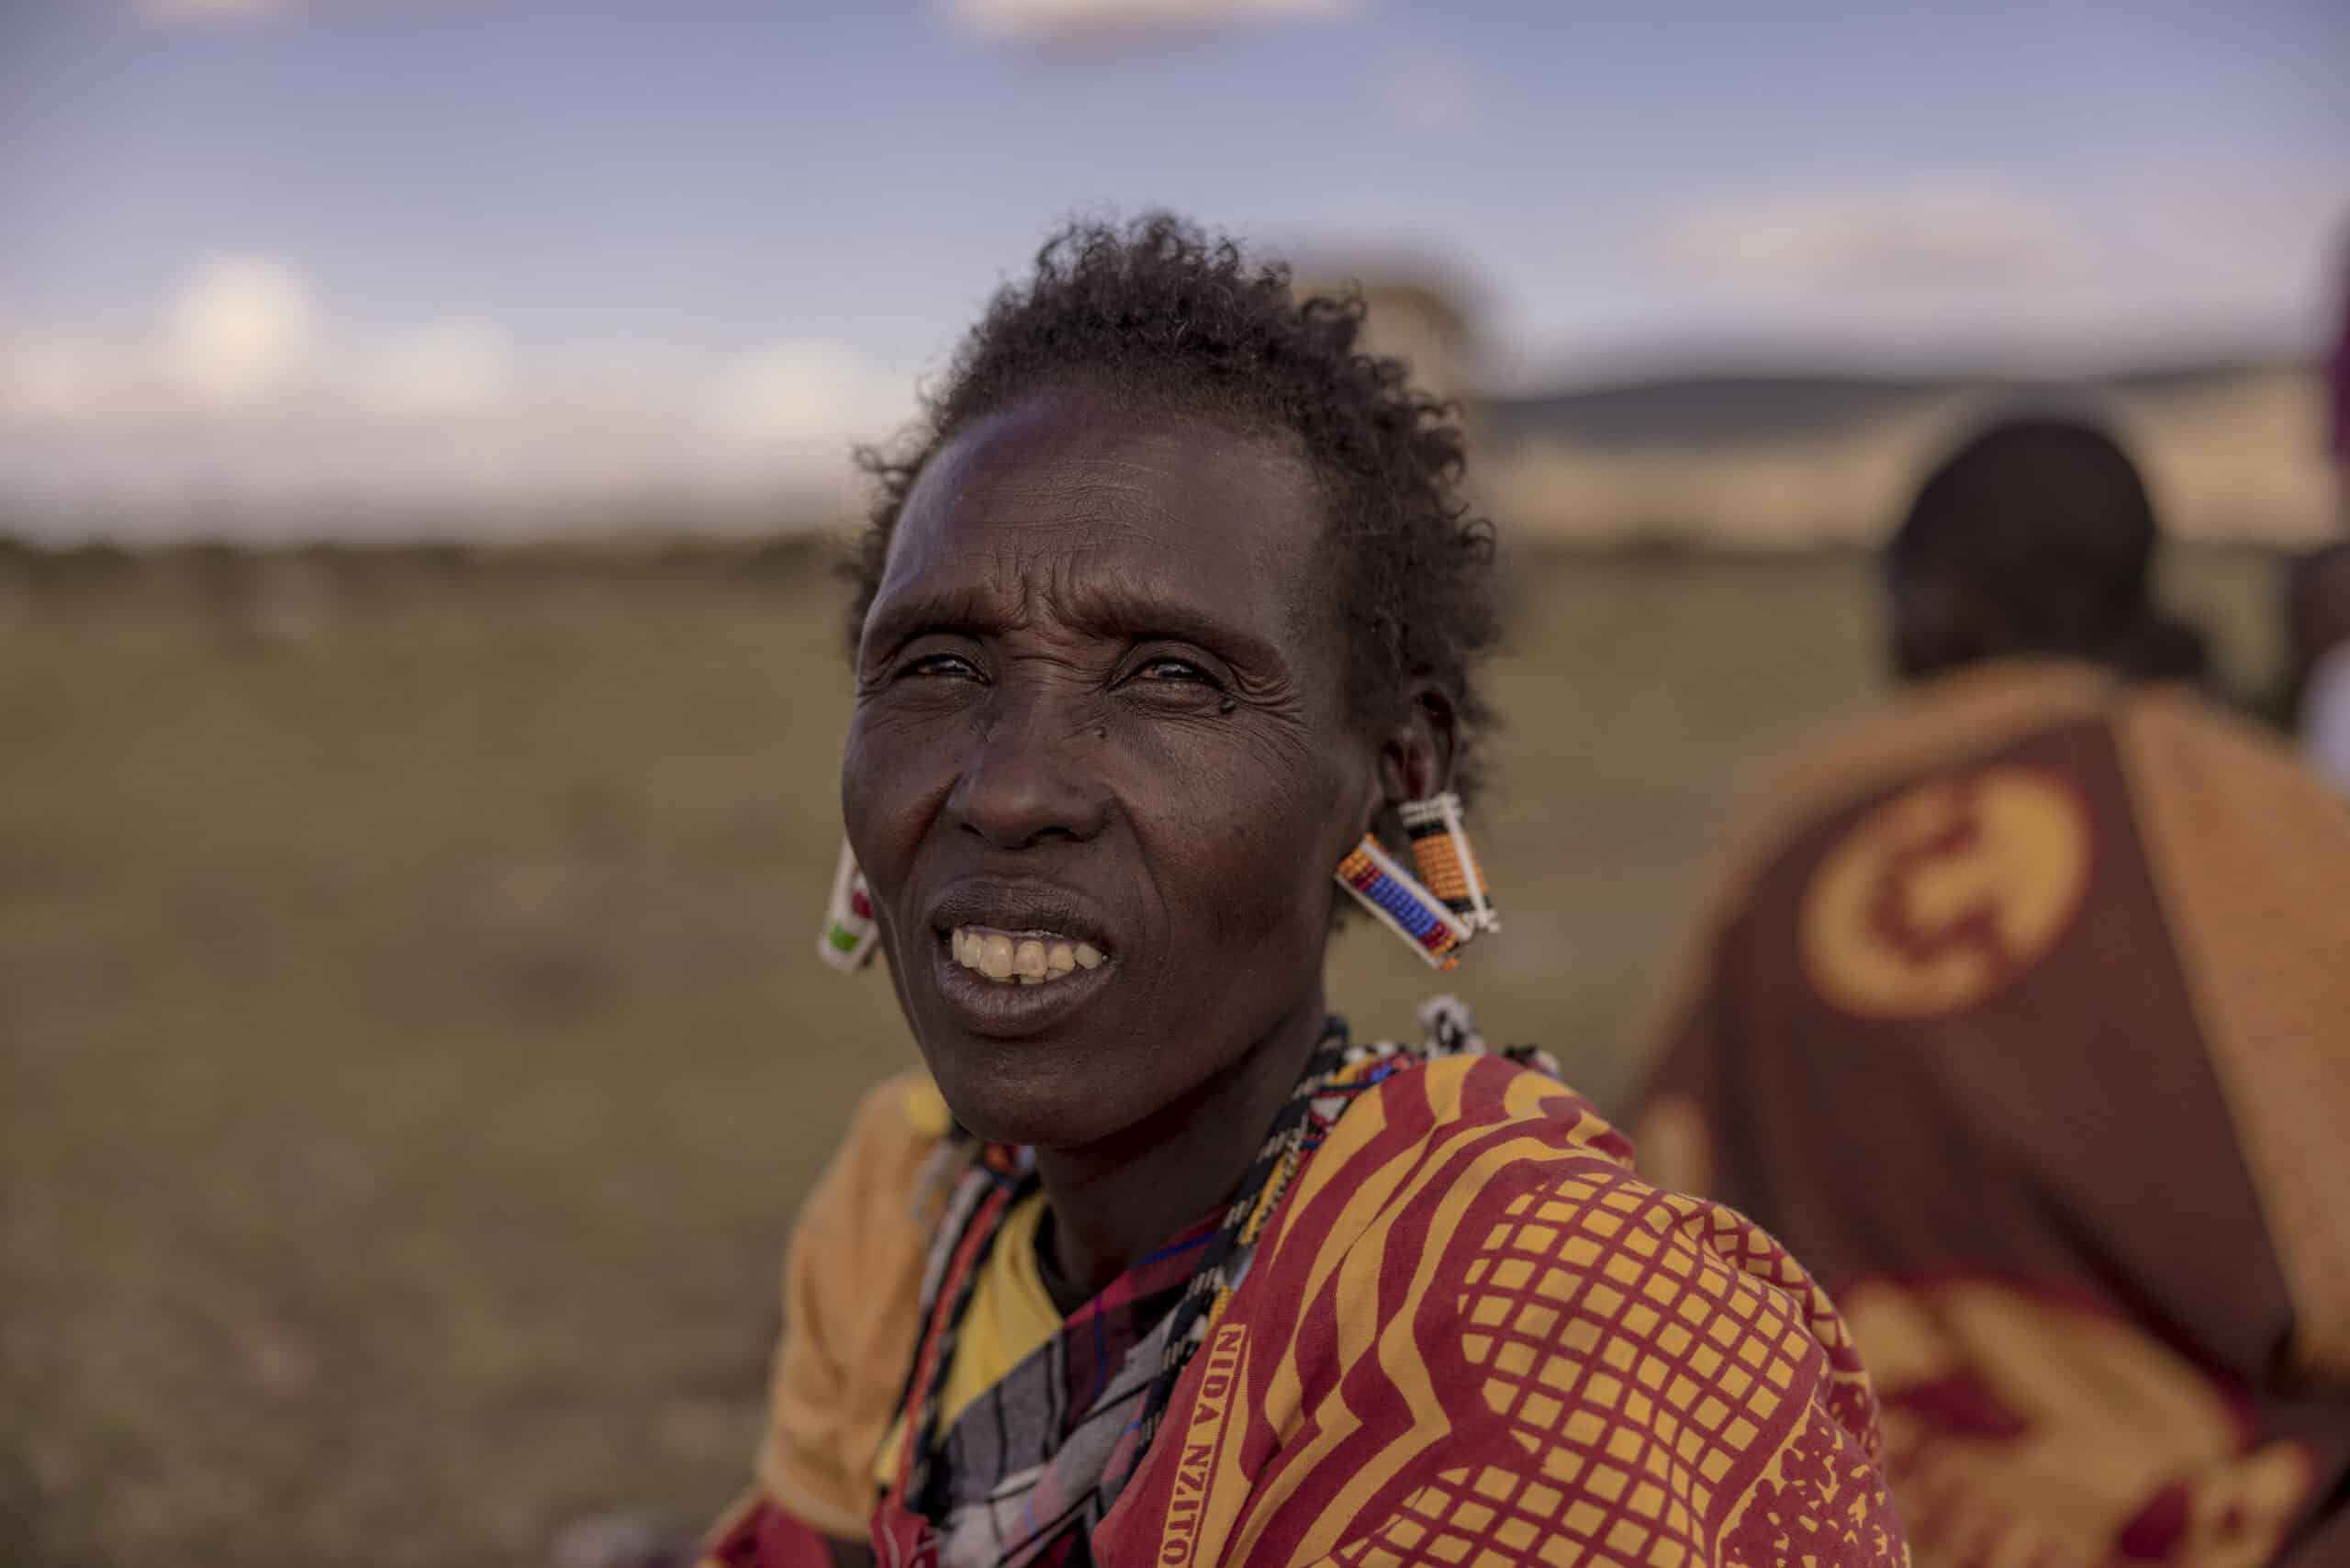 Eine Massai-Frau in traditioneller Kleidung, mit Perlenohrringen und einem leuchtend roten Shuka, lächelt im Freien vor dem unscharfen Hintergrund einer Wiese und einer weiteren Person in ähnlicher Kleidung. © Fotografie Tomas Rodriguez